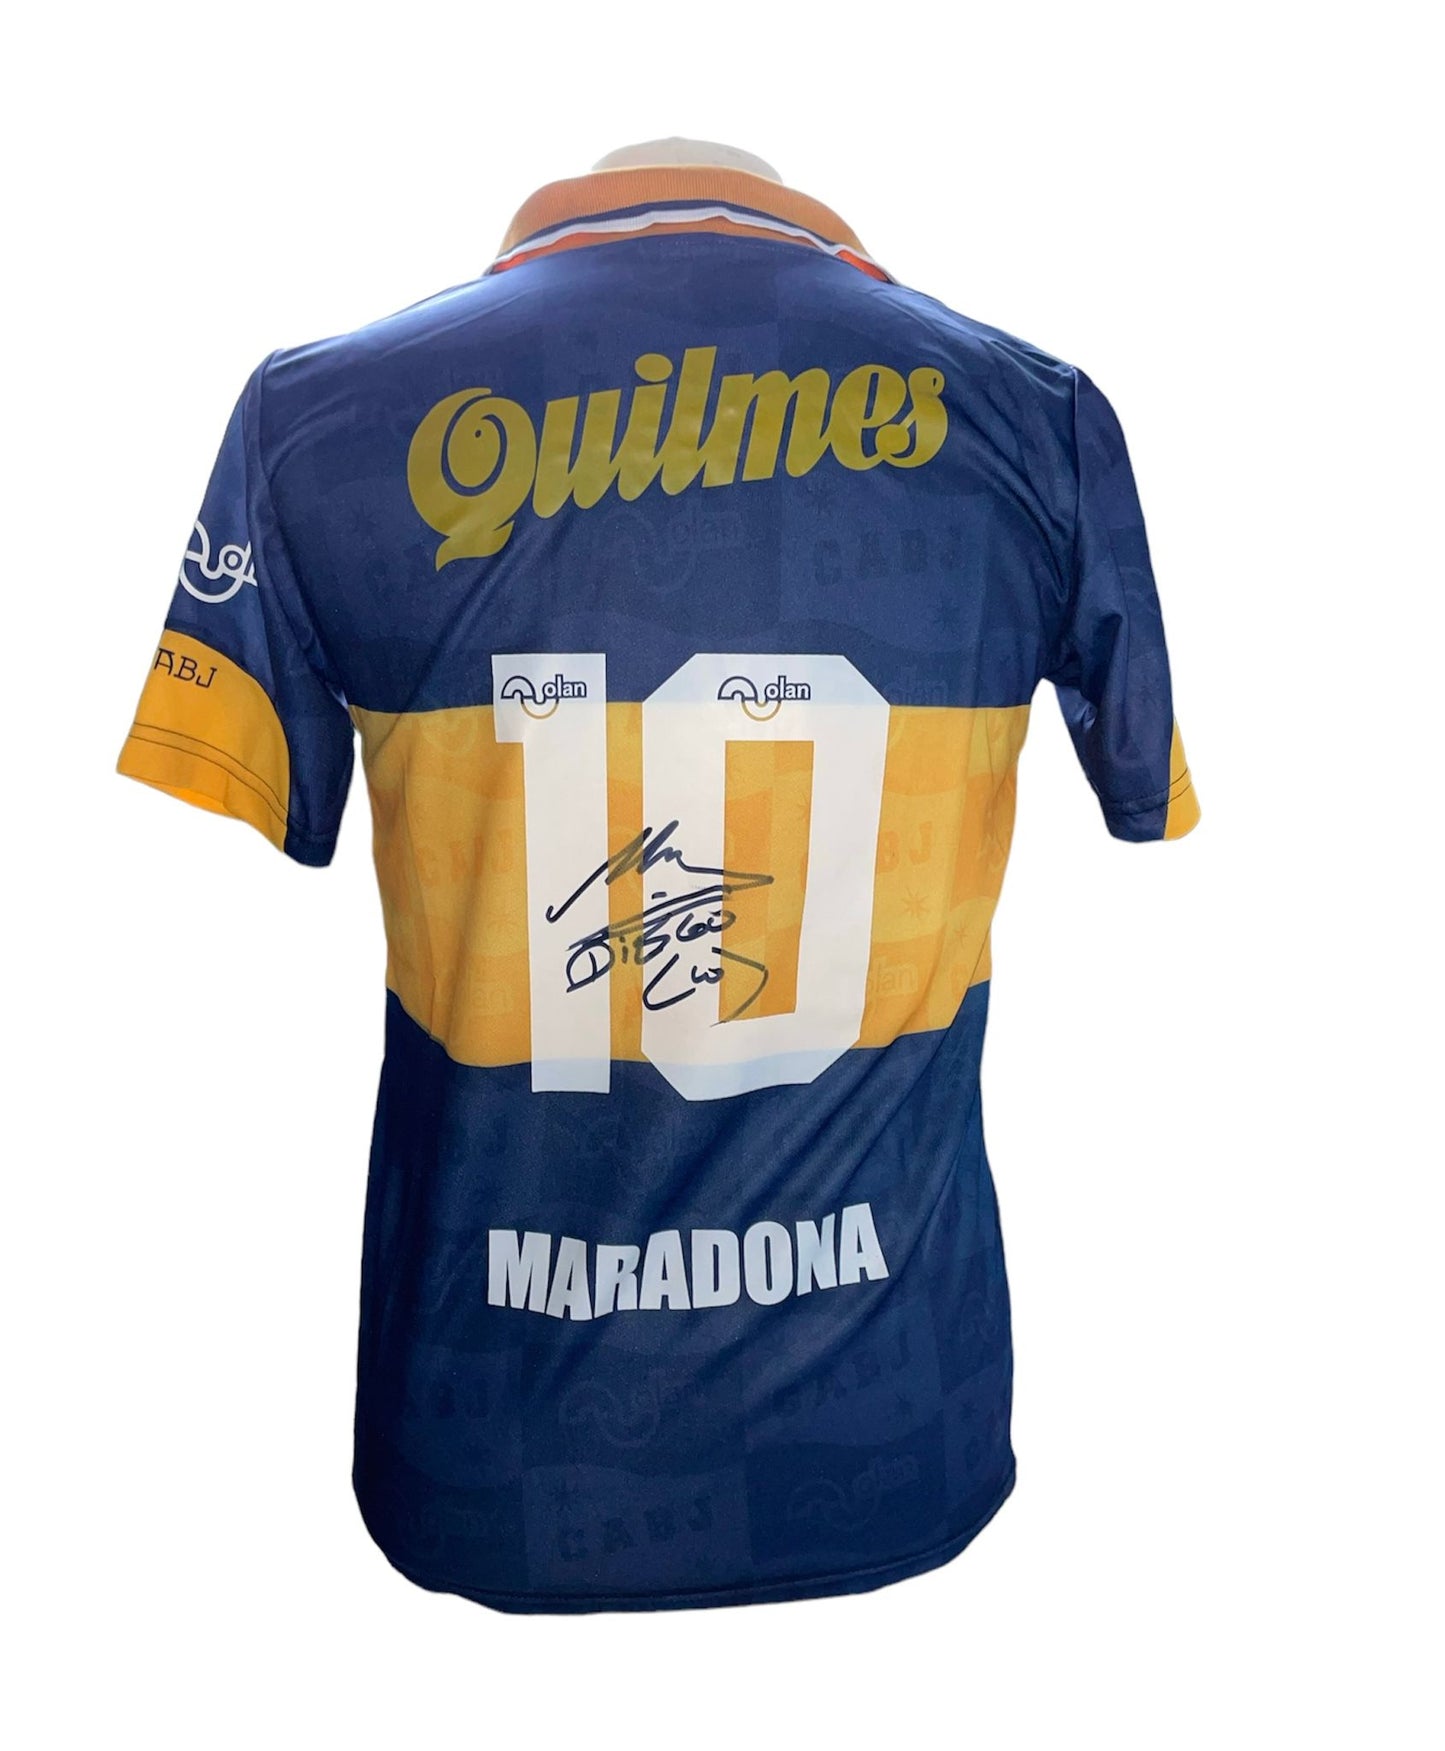 Diego Maradona gesigneerd Boca Juniors 1995 shirt met certificaat